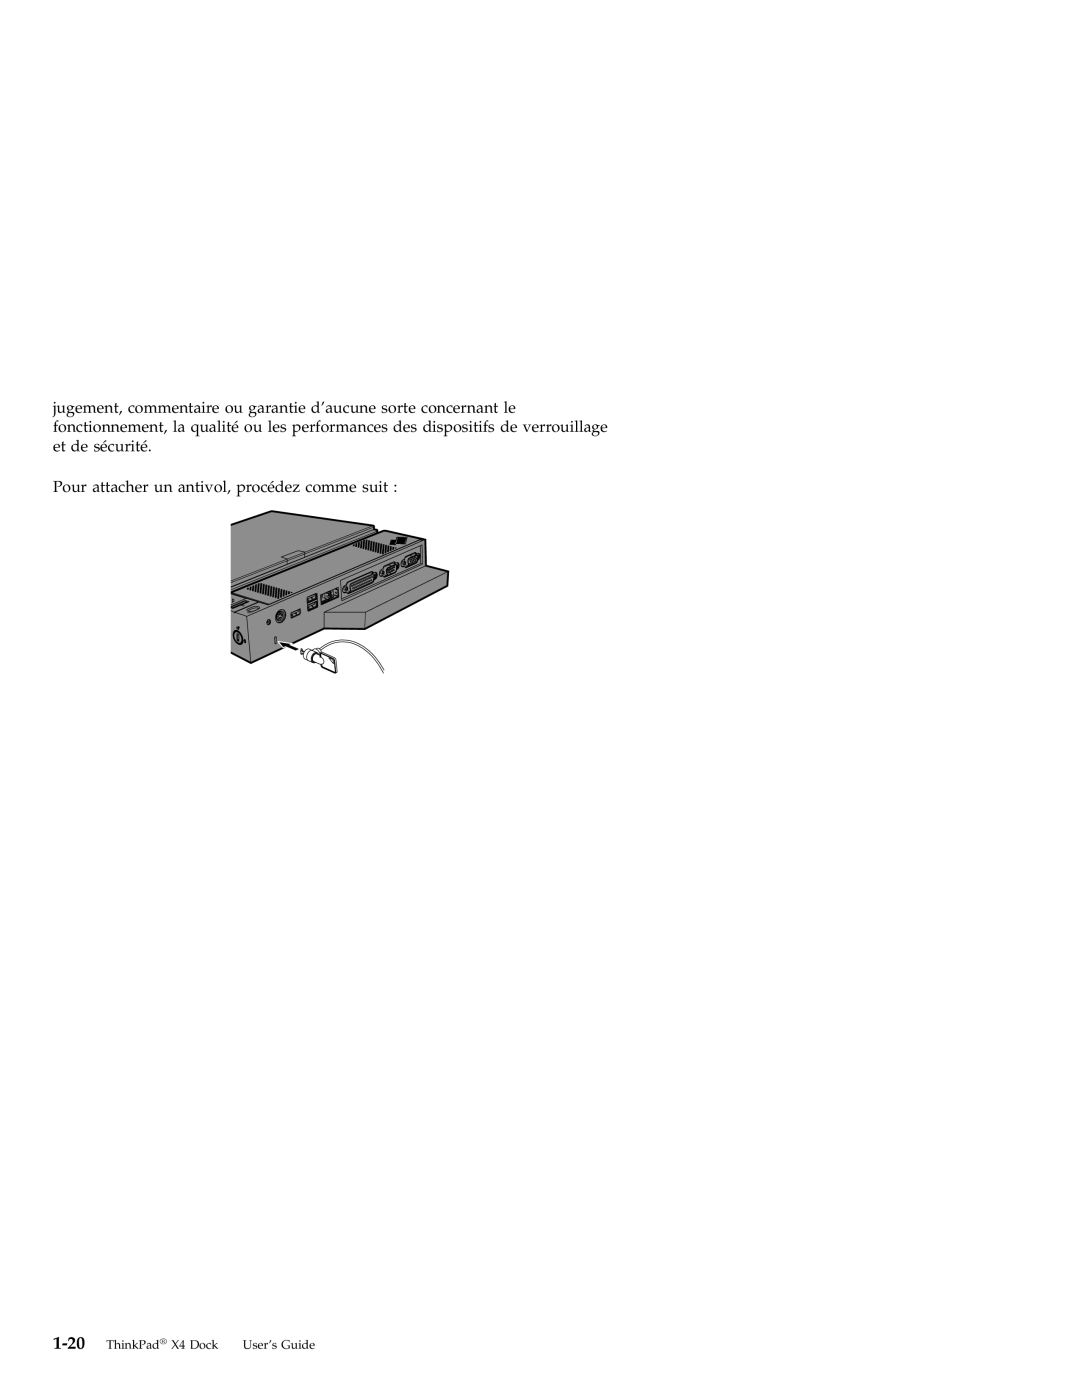 IBM manual Pour attacher un antivol, procédez comme suit, ThinkPad X4 Dock User’s Guide 